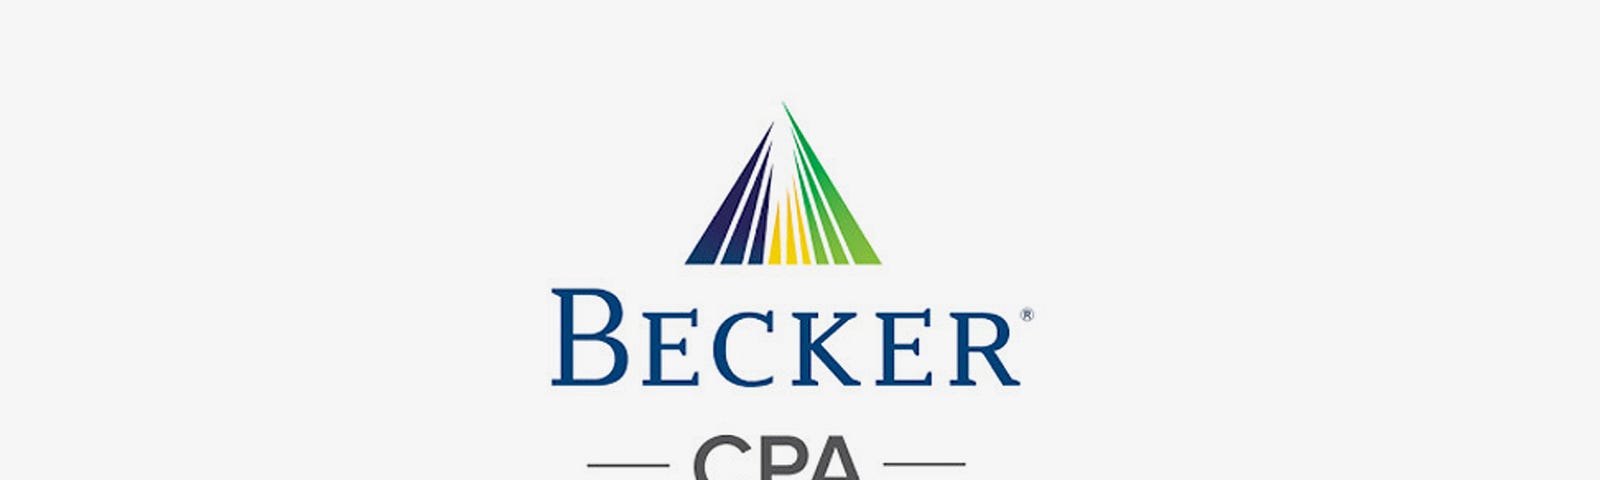 becker cpa software